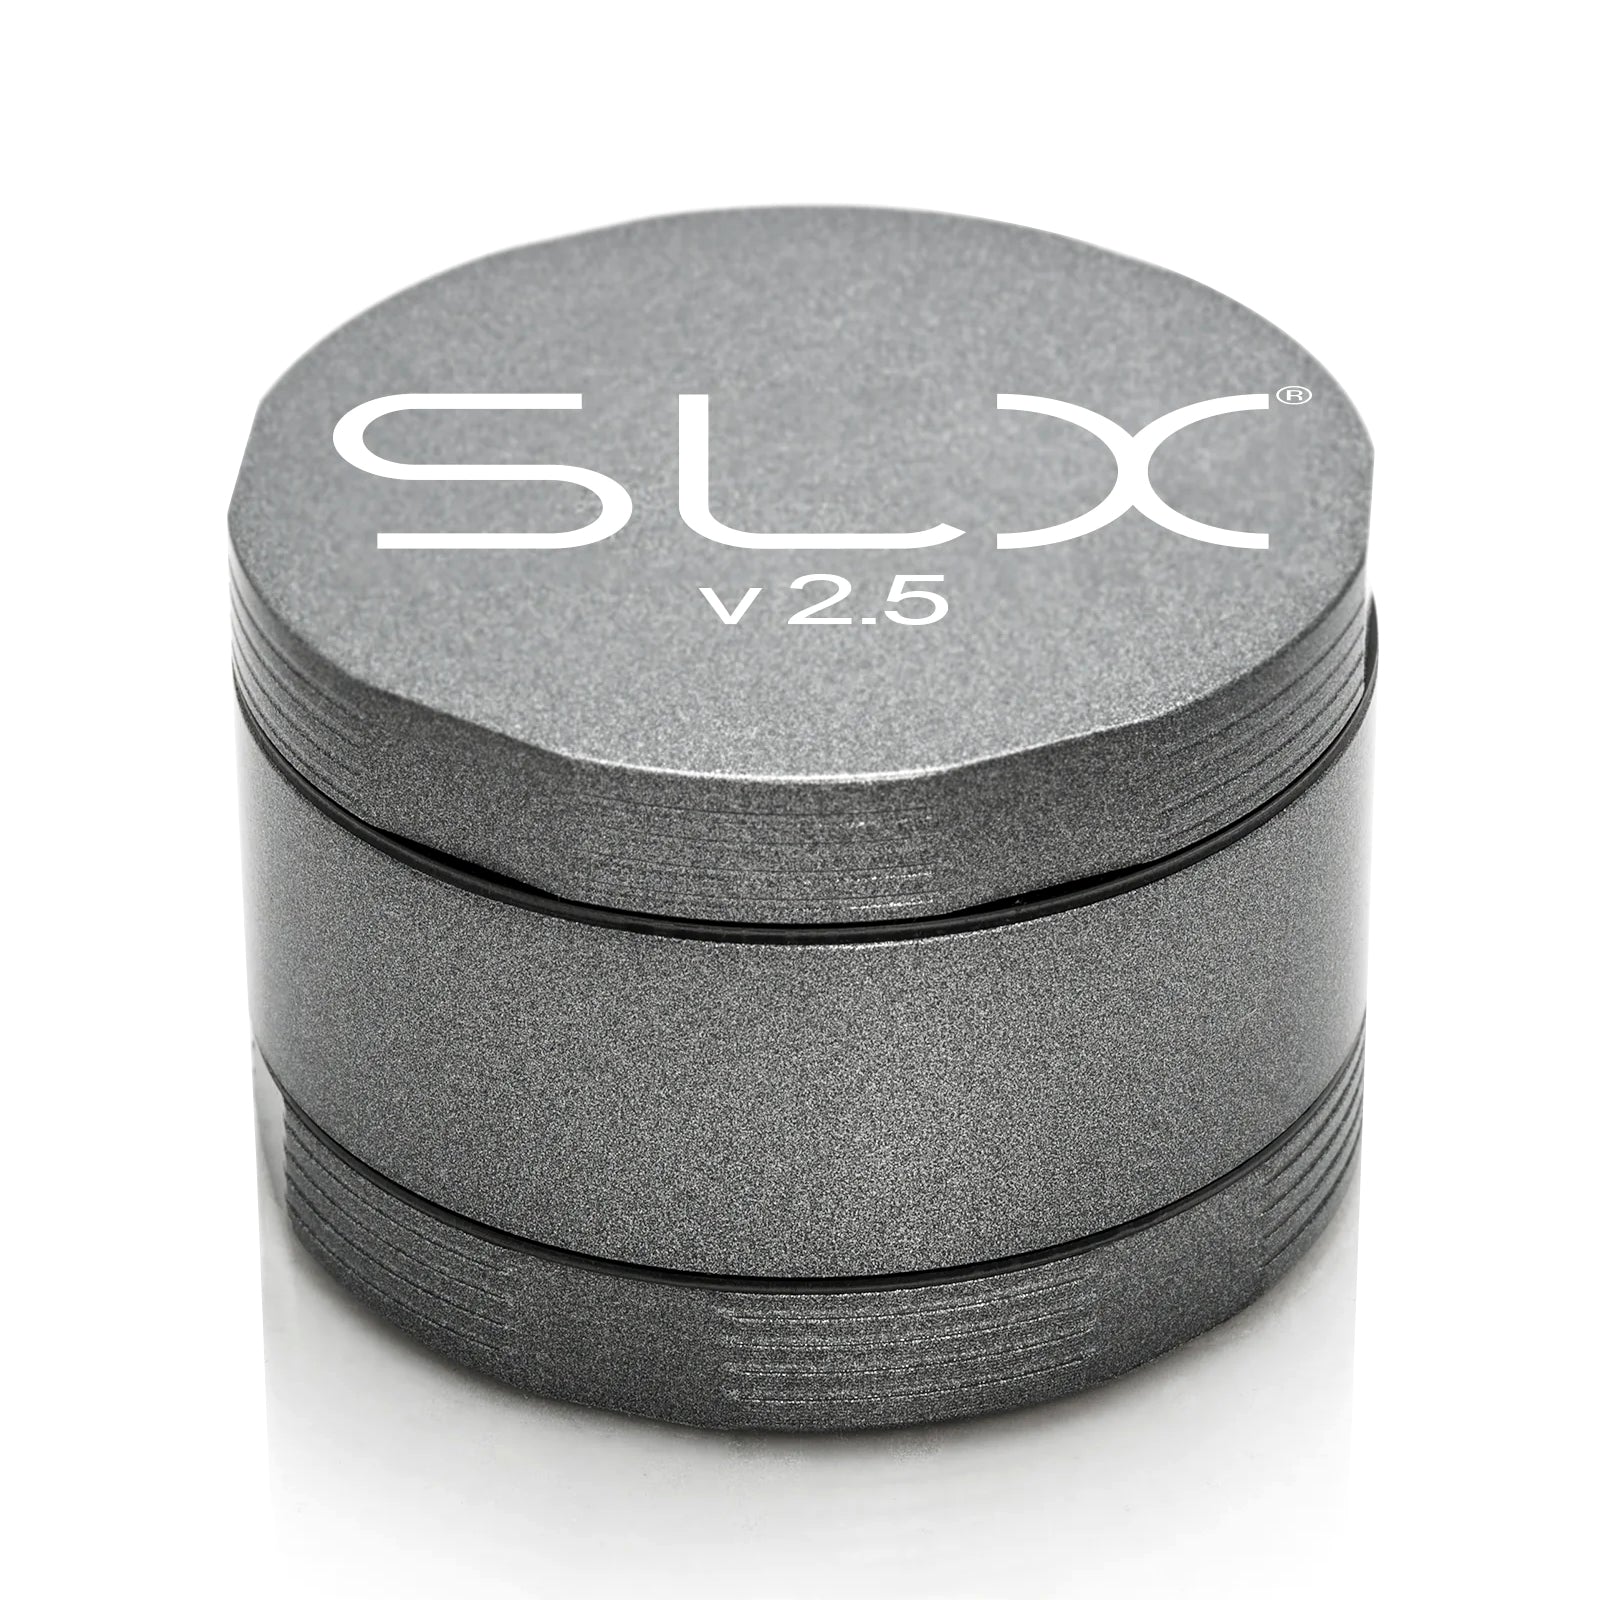 SLX Grinder V2.5 62mm